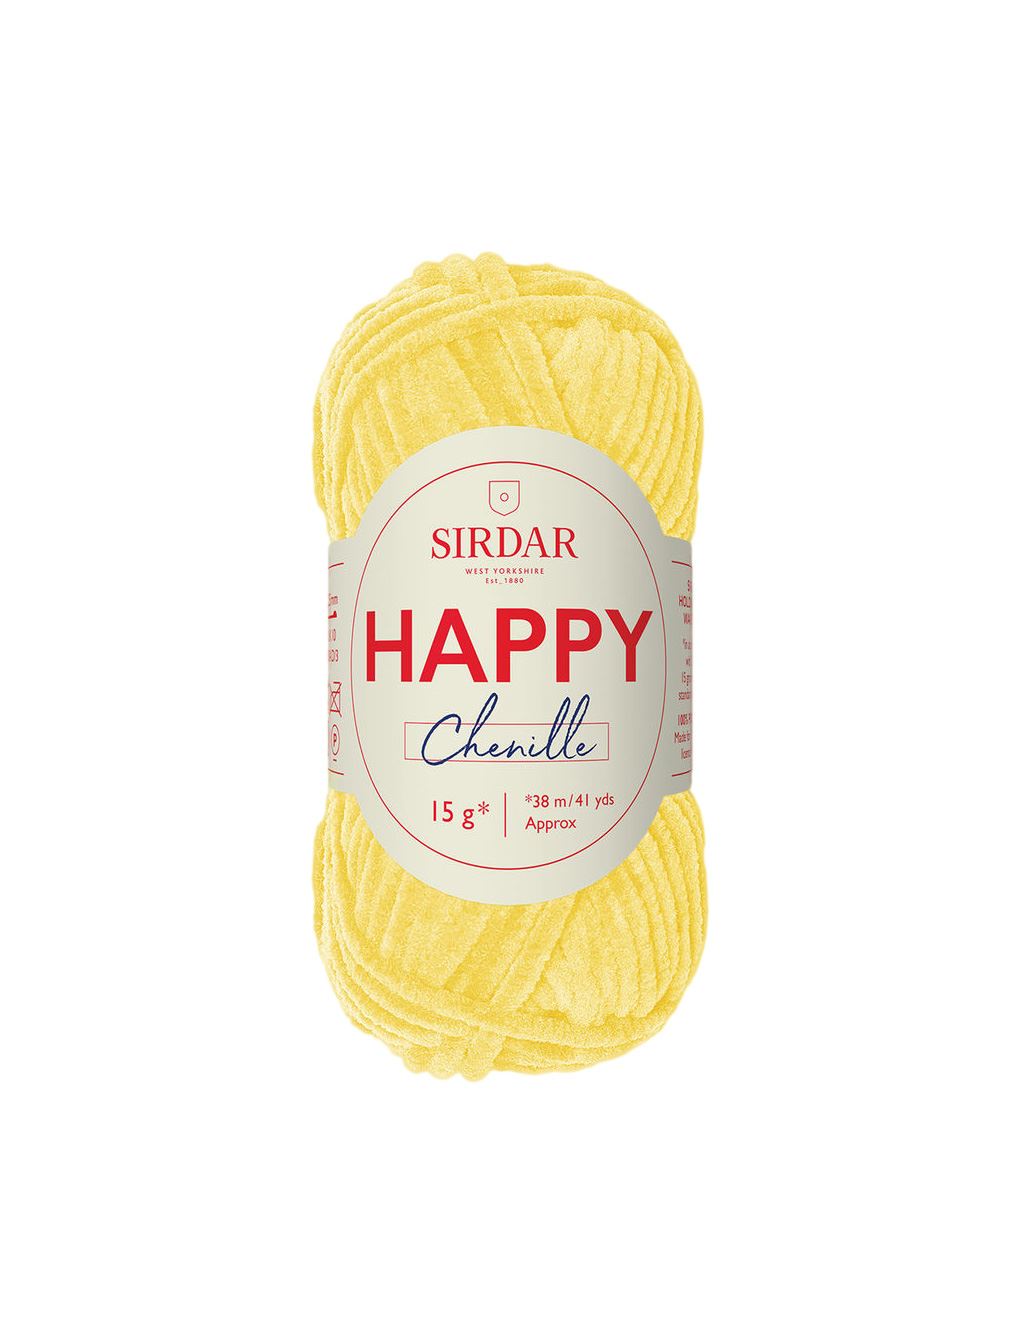 Sirdar Happy Chenille Duckling (014) yarn - 15g